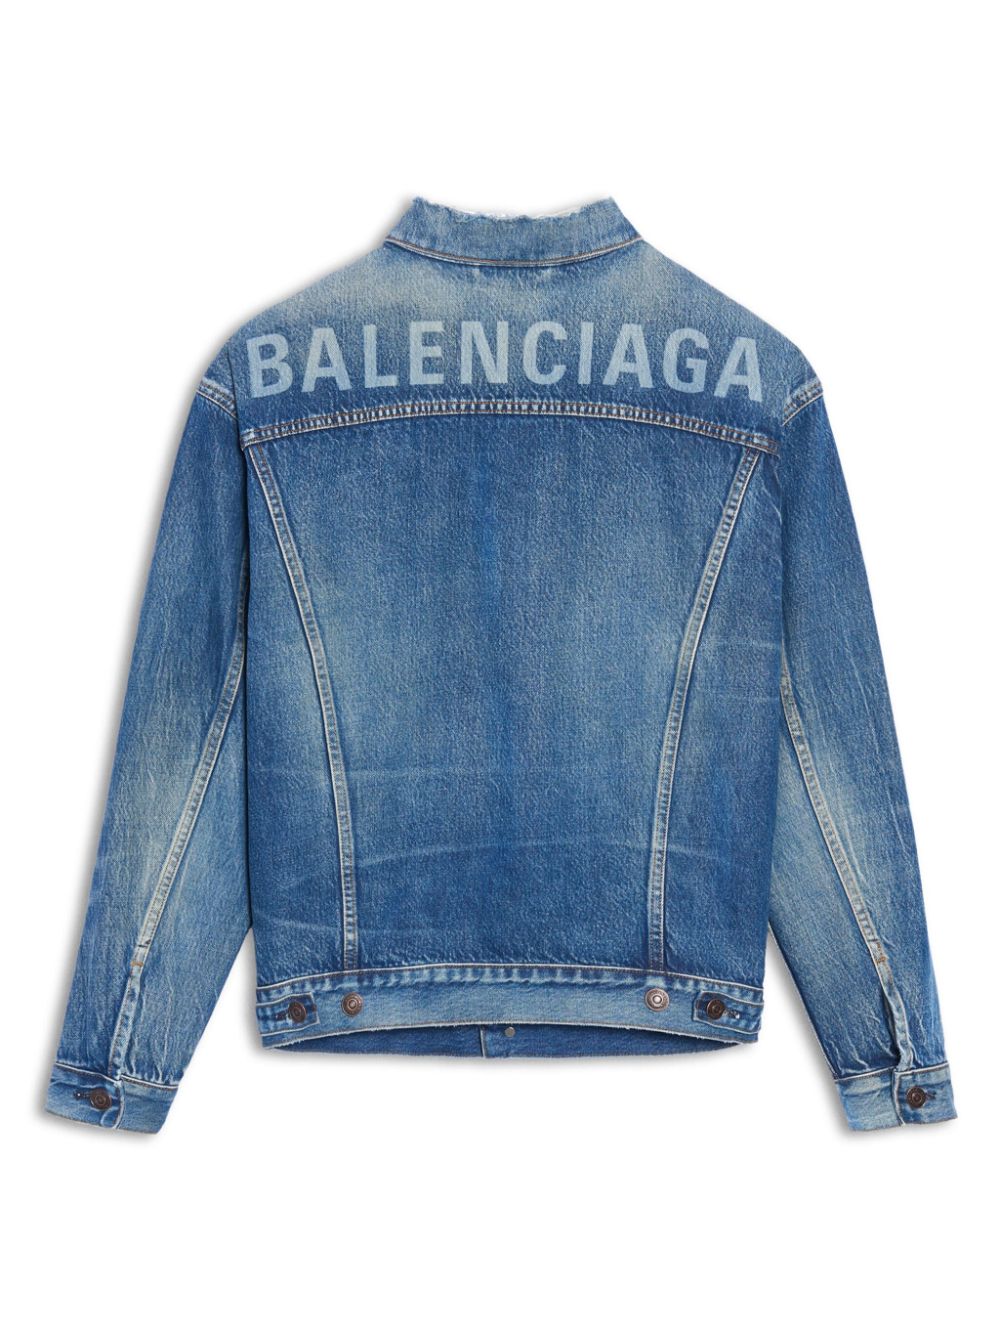 Balenciaga Printed Logo Denim Jacket - Farfetch